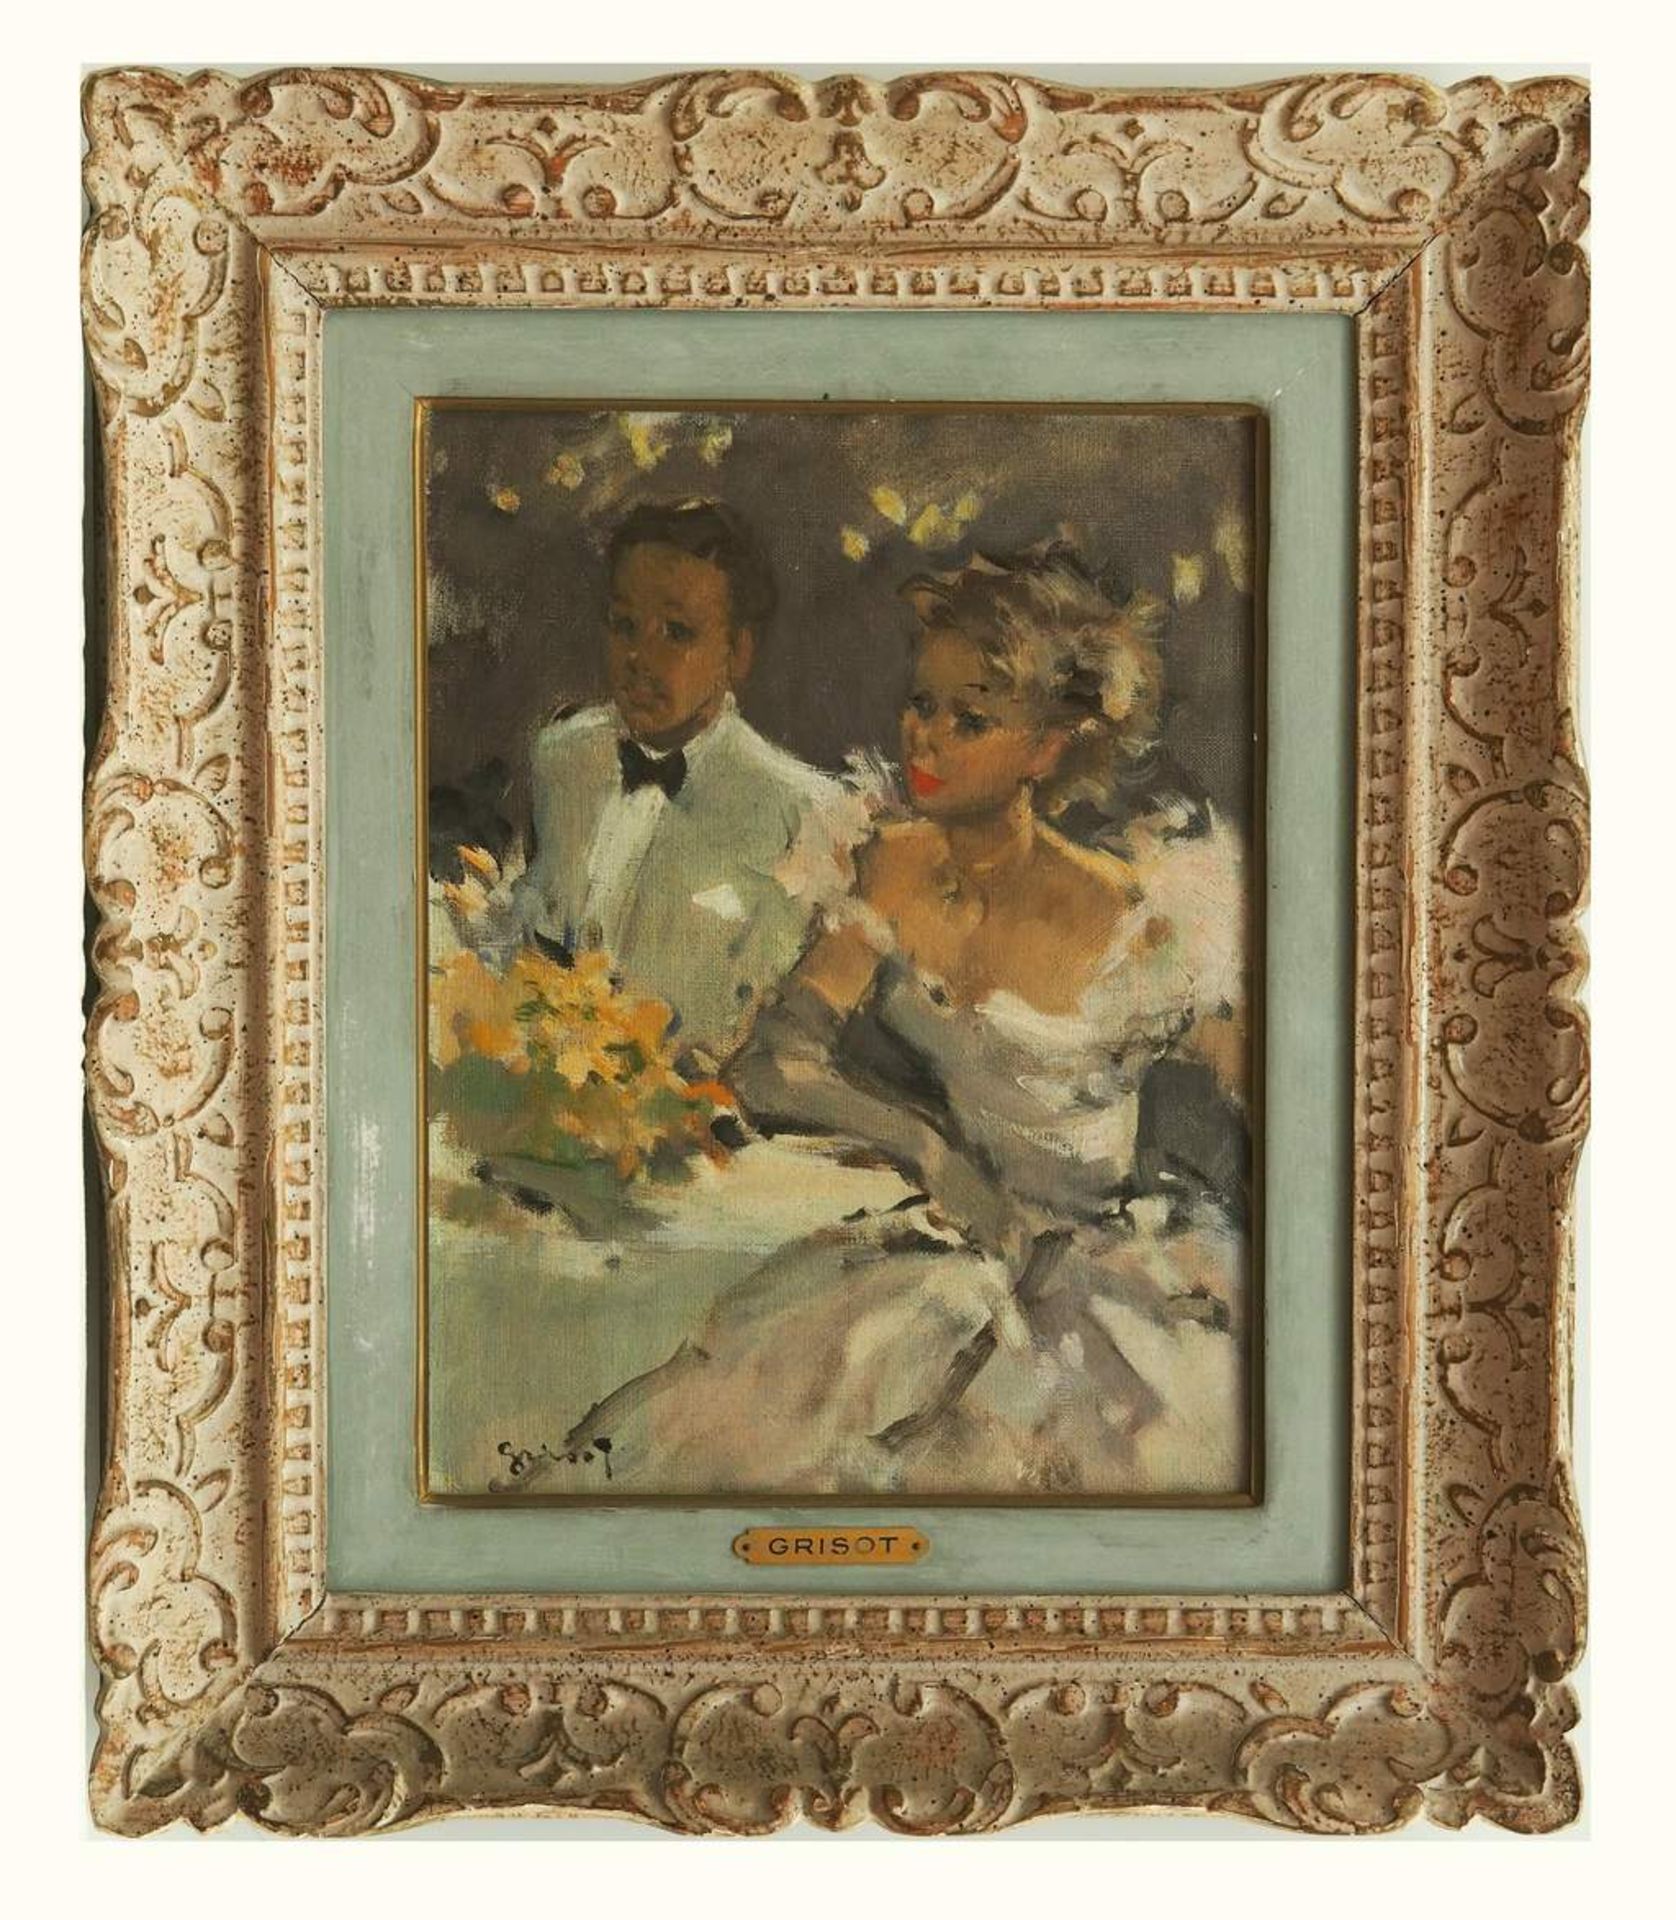 GRISOT, Pierre. 1911 Besancon - 1995 Paris. Elegantes Paar in Abendgarderobe. Öl auf Leinwand, - Bild 3 aus 7